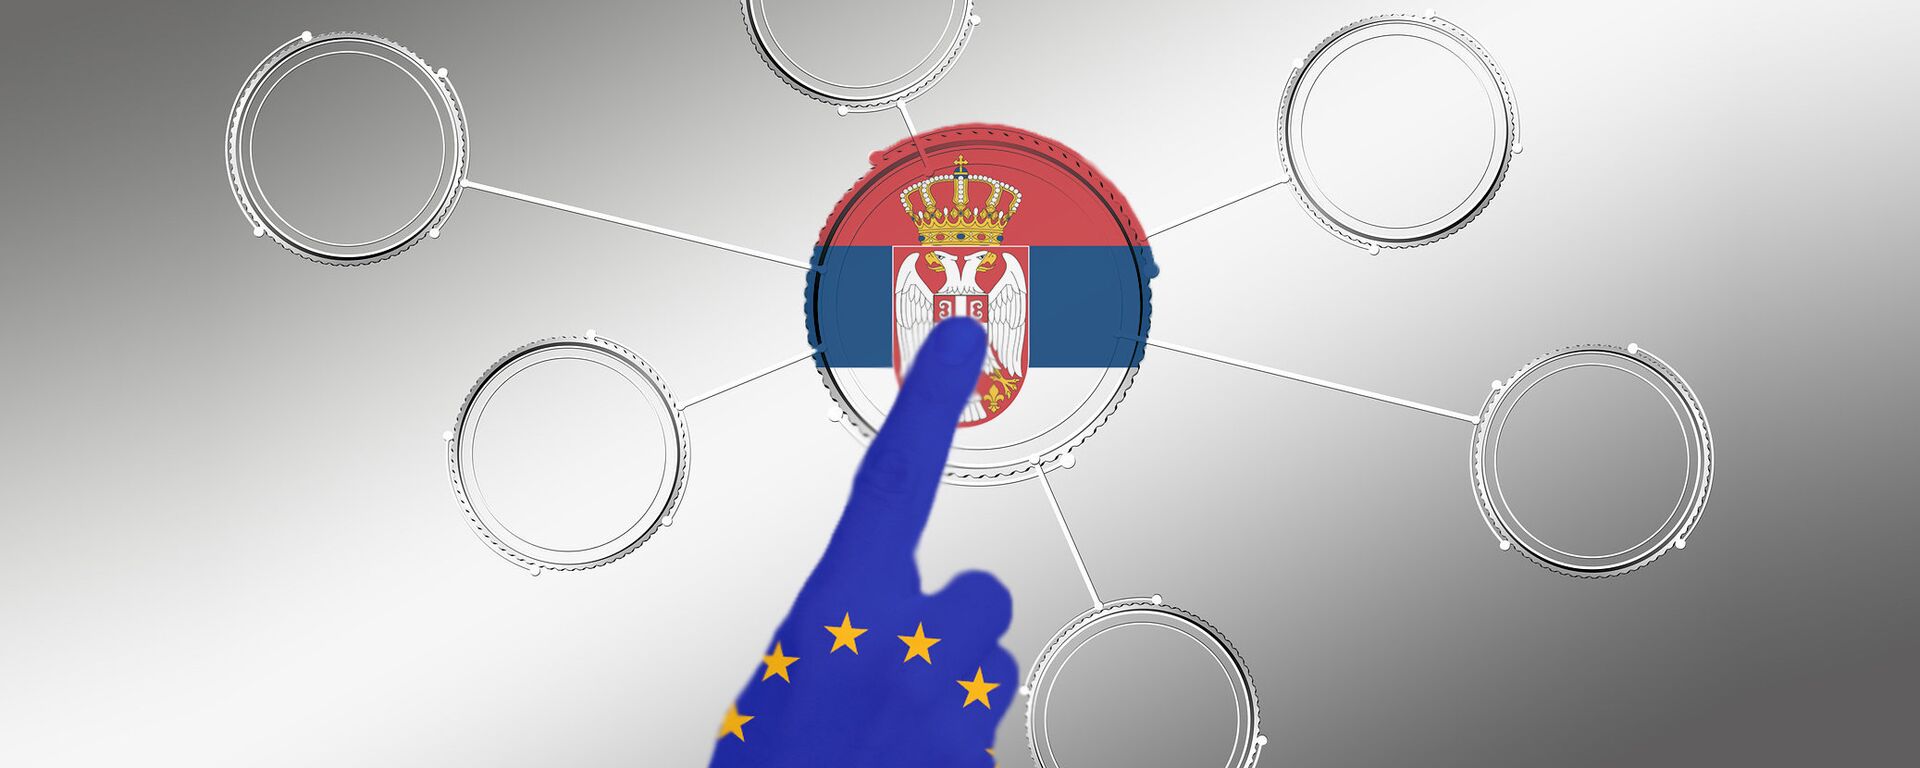 Srbija EU - ilustracija - Sputnik Srbija, 1920, 14.03.2022